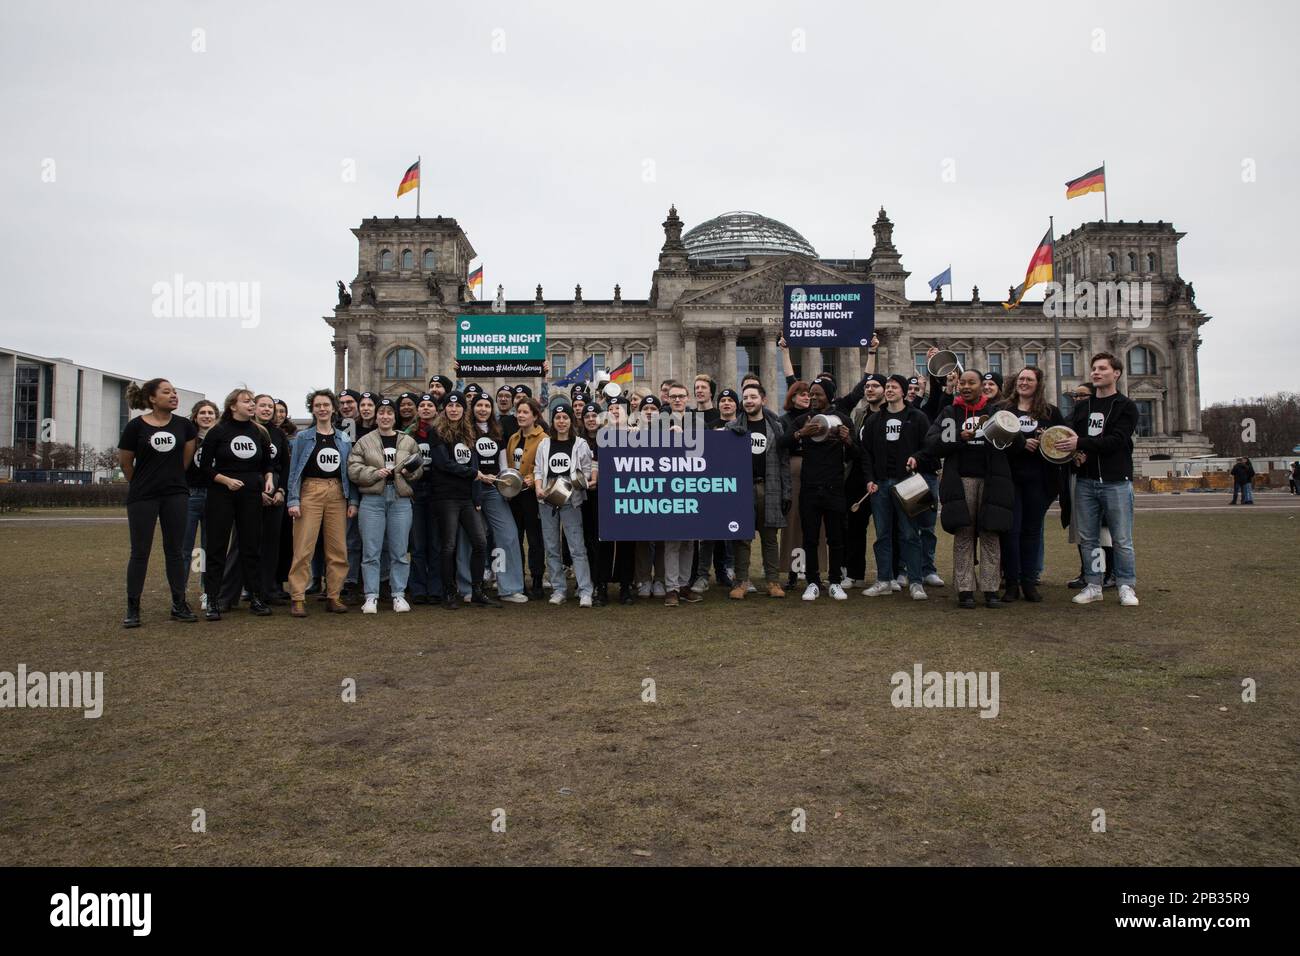 12 mars 2023, Berlin, Allemagne: Sur 12 mars 2023, un groupe de jeunes a protesté devant le bâtiment du Reichstag à Berlin pour attirer l'attention sur le fait que 828 millions de personnes dans le monde souffrent encore de la faim. Ils ont percuté des pots et ont organisé des pancartes avec le slogan ''Loud Against Hunger''. The ONE Campaign, également connu sous le nom ONE, est une organisation internationale, non partisane et à but non lucratif qui défend et mène des campagnes pour lutter contre l'extrême pauvreté et les maladies évitables, en particulier en Afrique, en sensibilisant le public et en faisant pression sur les dirigeants politiques pour qu'ils soutiennent les politiques et les programmes qui sont mis en place Banque D'Images